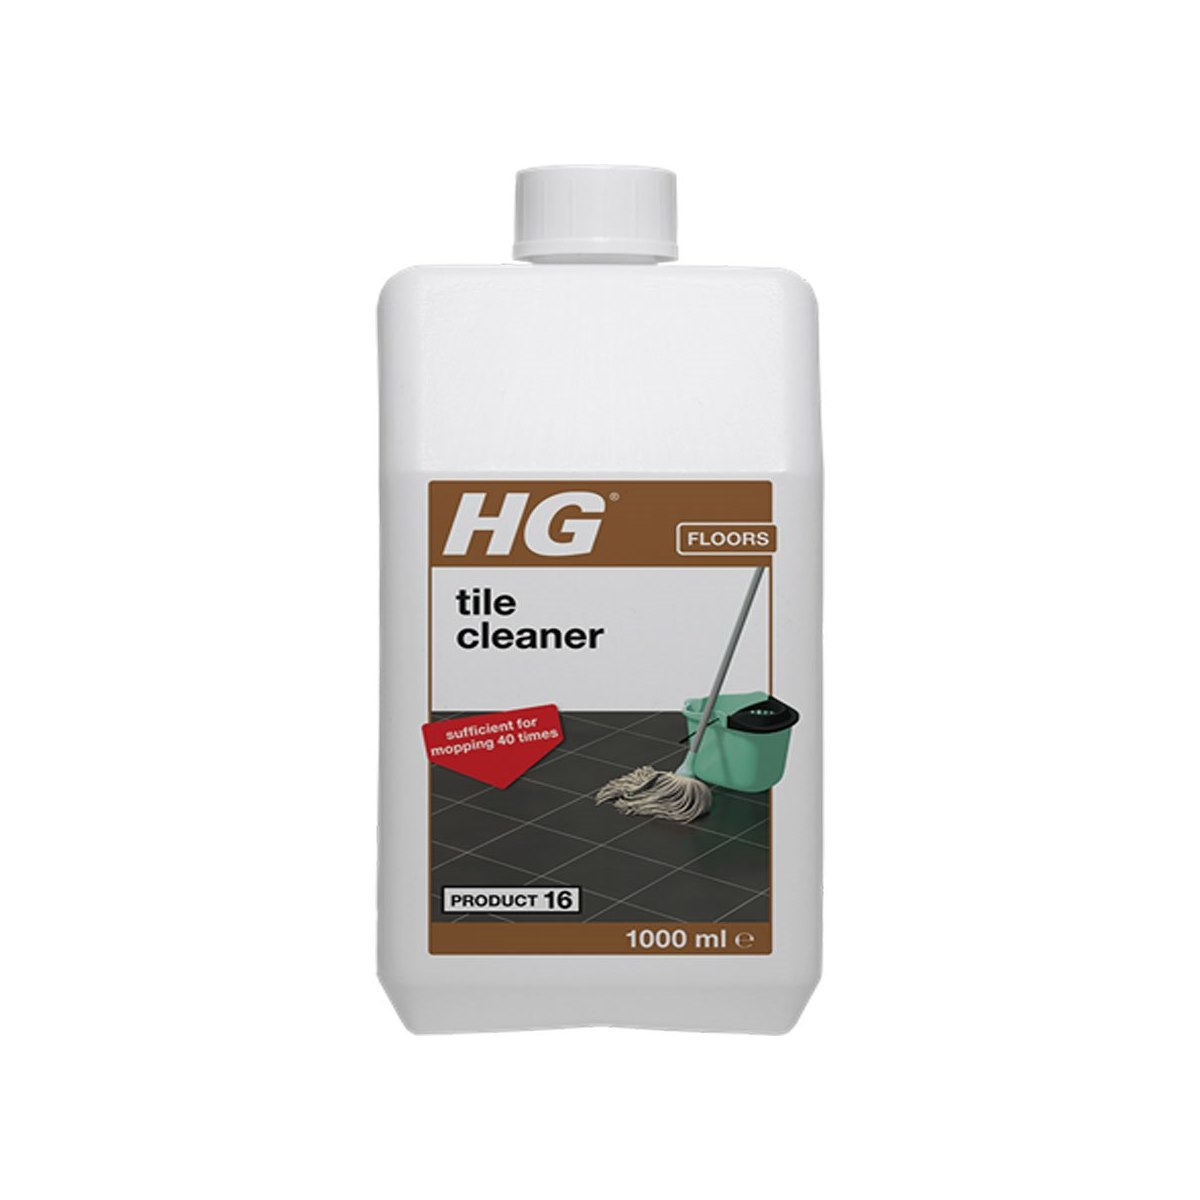 HG Tile Cleaner Product 16 1 Litre